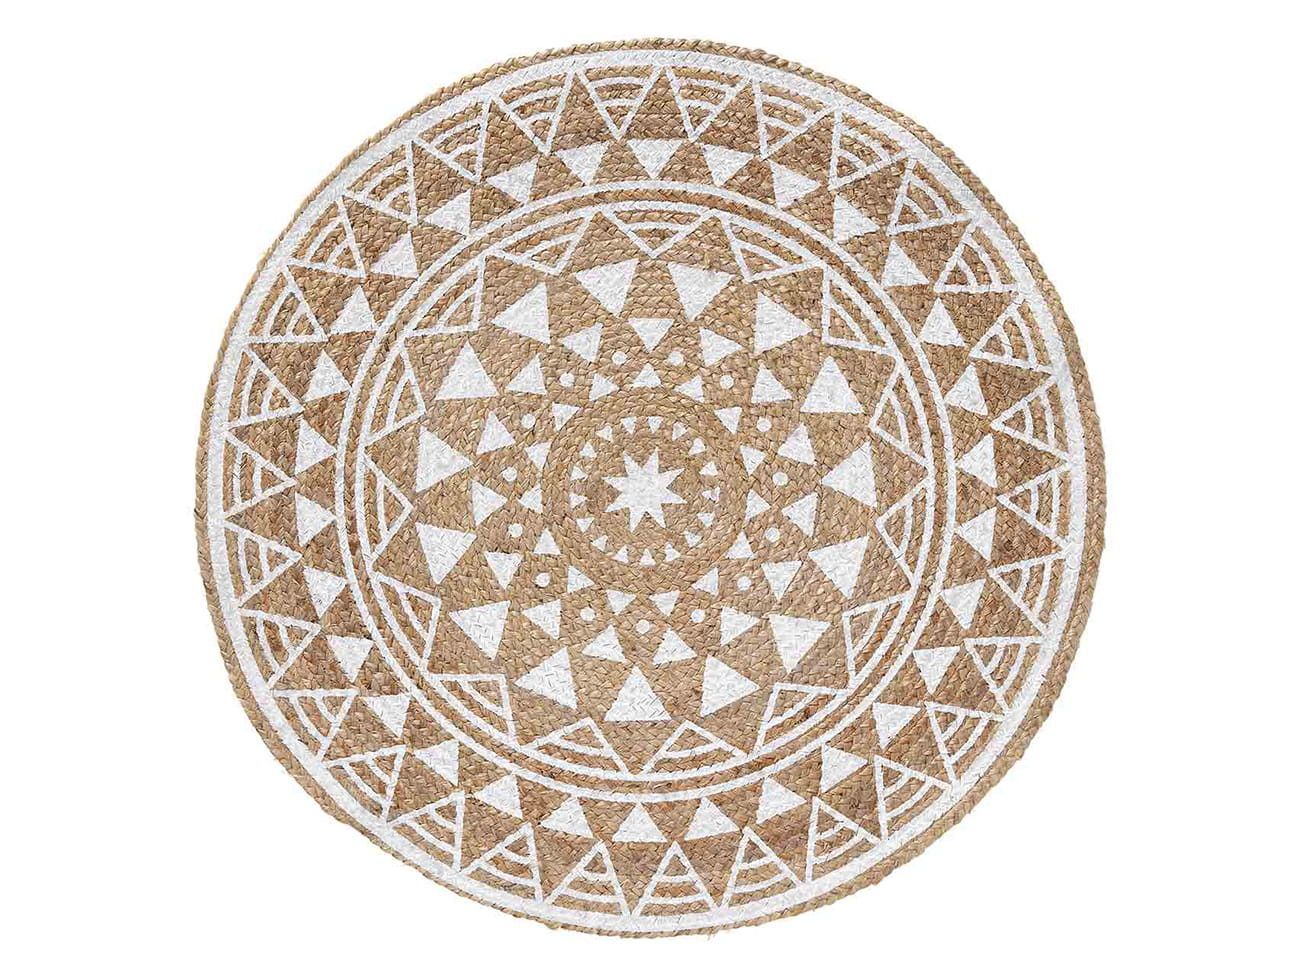 DomTextilu Krásny hnedo biely jutový okrúhly koberec kolekcia BOHEMIA 39715